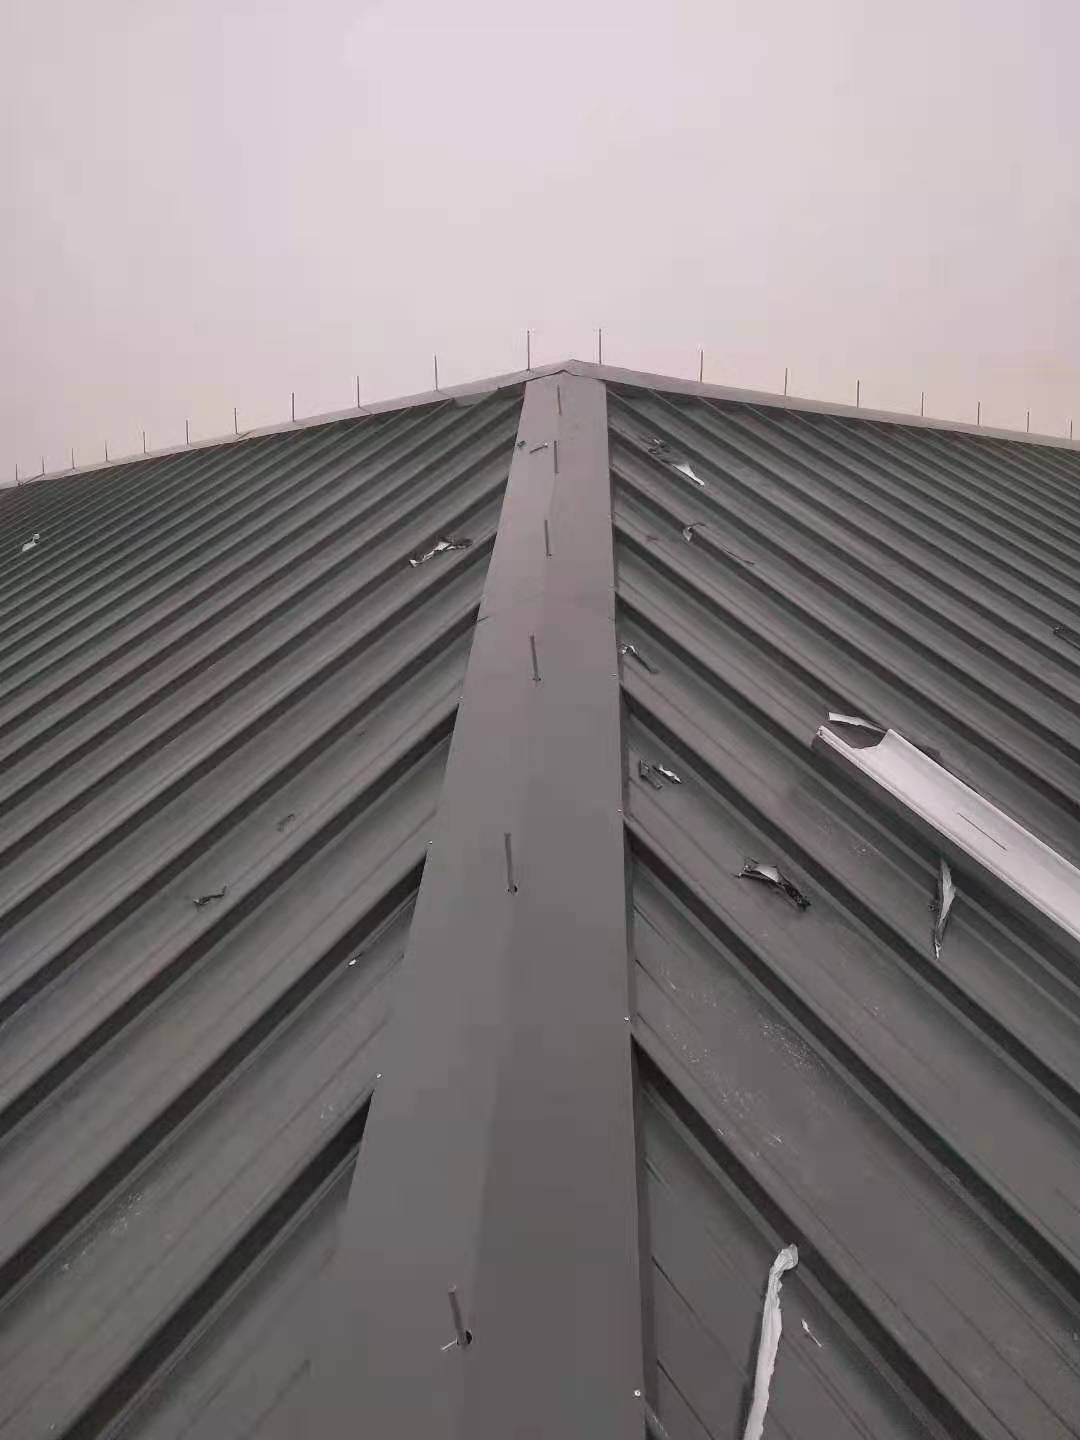 内蒙古乌海铝镁锰直立锁边屋面板65型直销